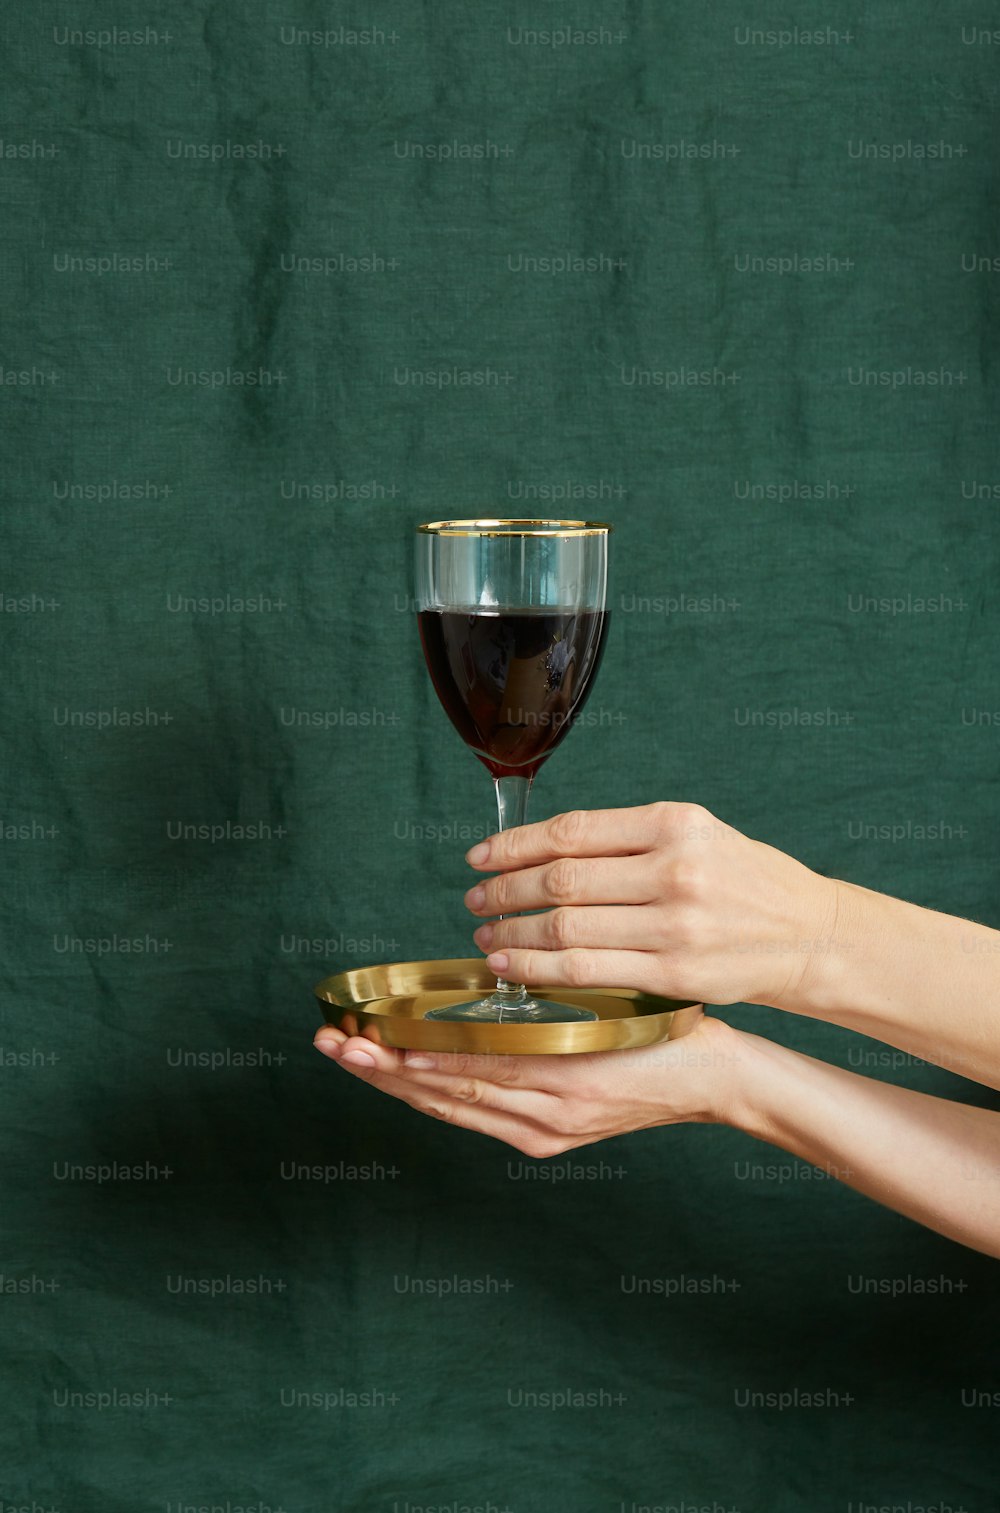 una mano sosteniendo una copa de vino tinto